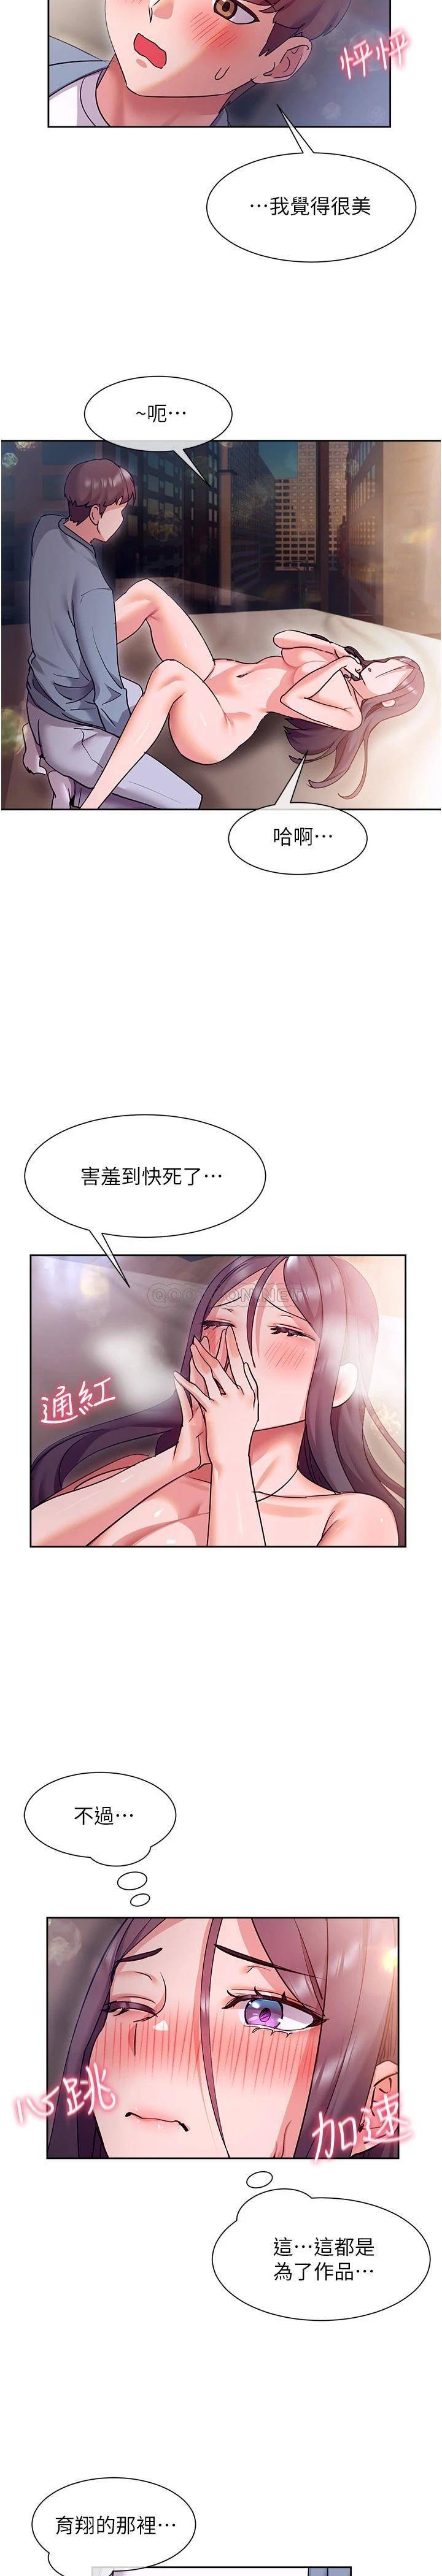 韩国污漫画 現上教學 第13话喷到床单都湿了… 17